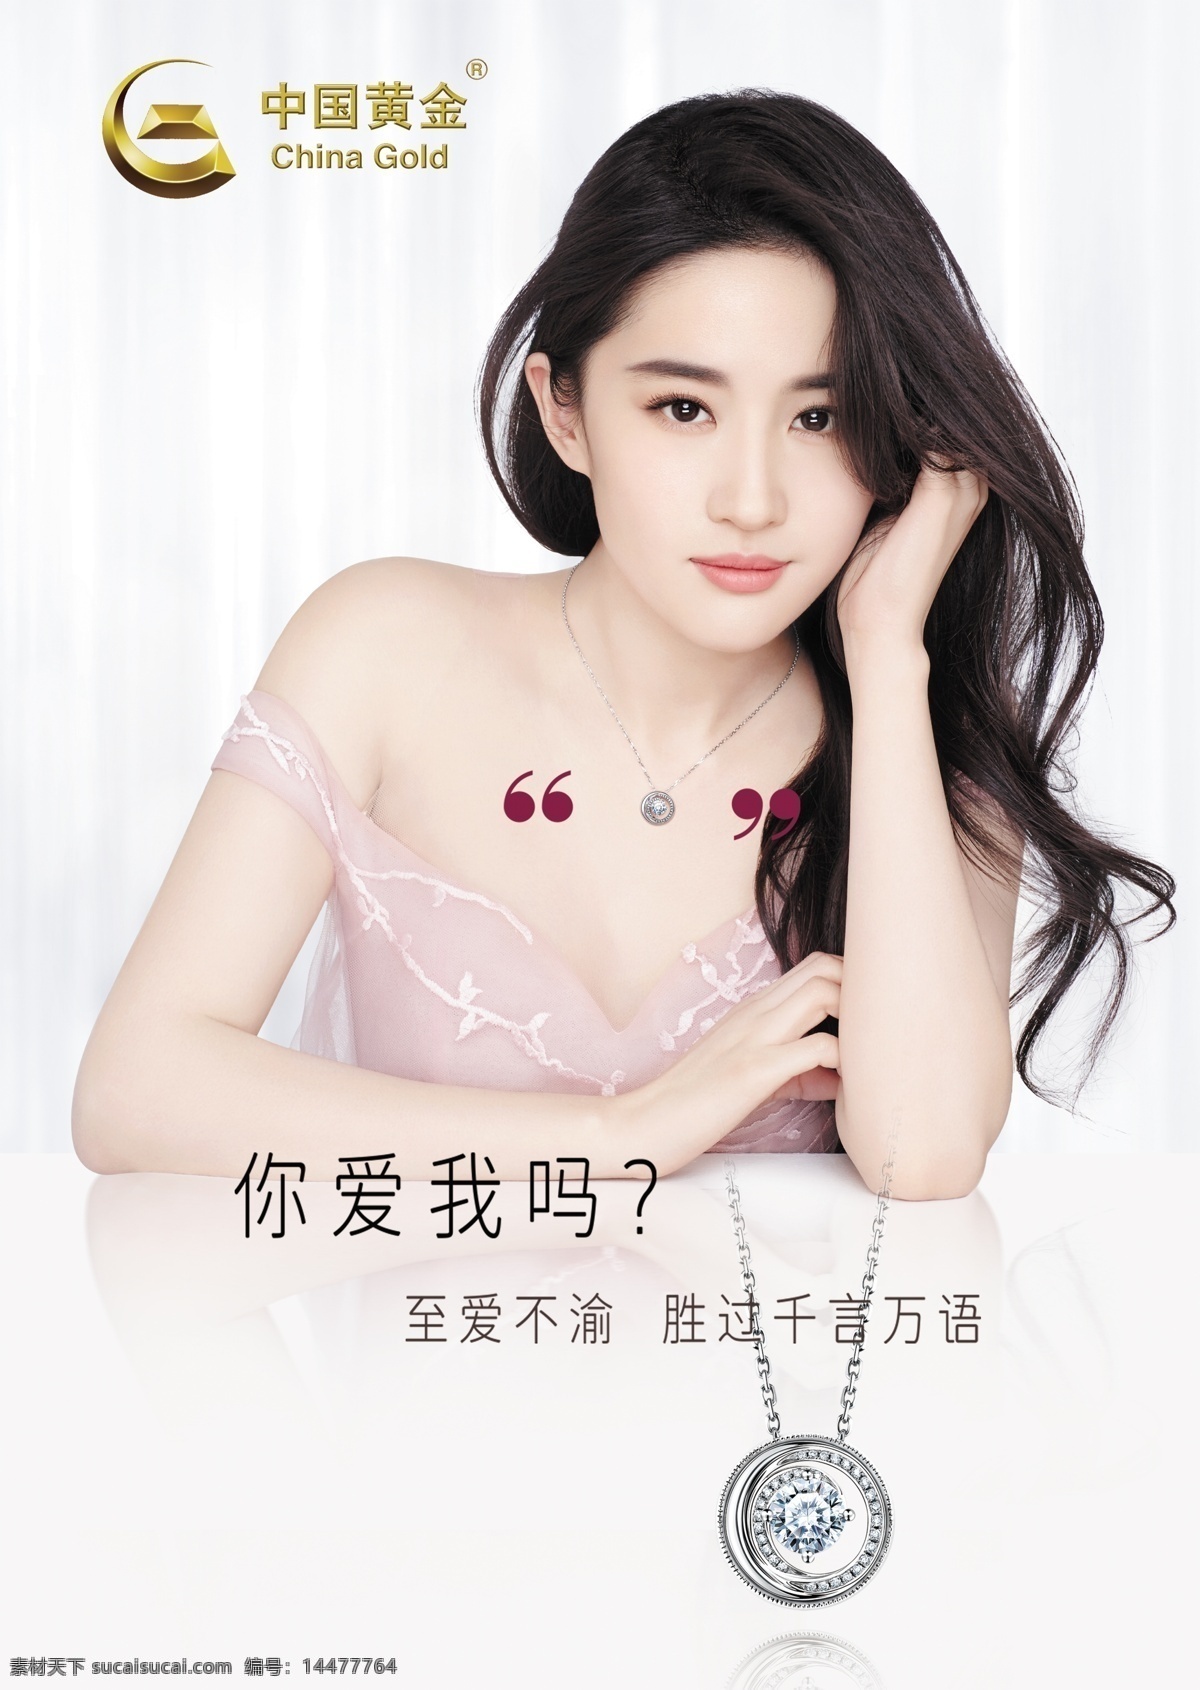 中国黄金 橱窗广告 形象广告 海报